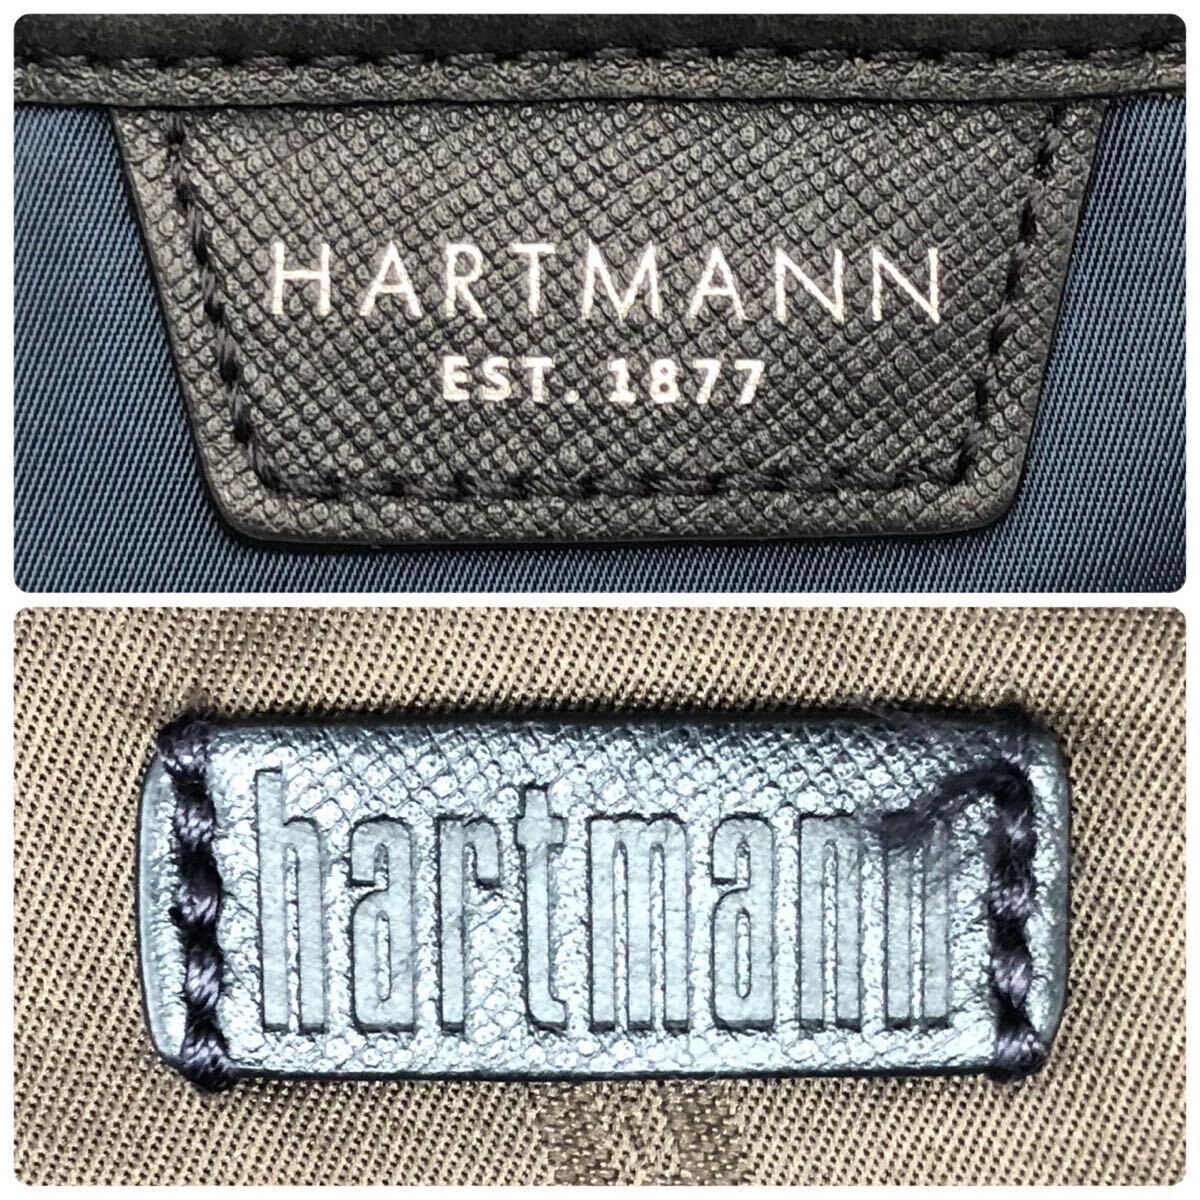 1  йен ~[ редко встречающийся  ... красивая вещь ] Hartmann  сердце  ... ...  мужской  ... сумка   рюкзак   нейлон   кожа  A4+PC...  большое содержимое   ...  путешествие   синий 